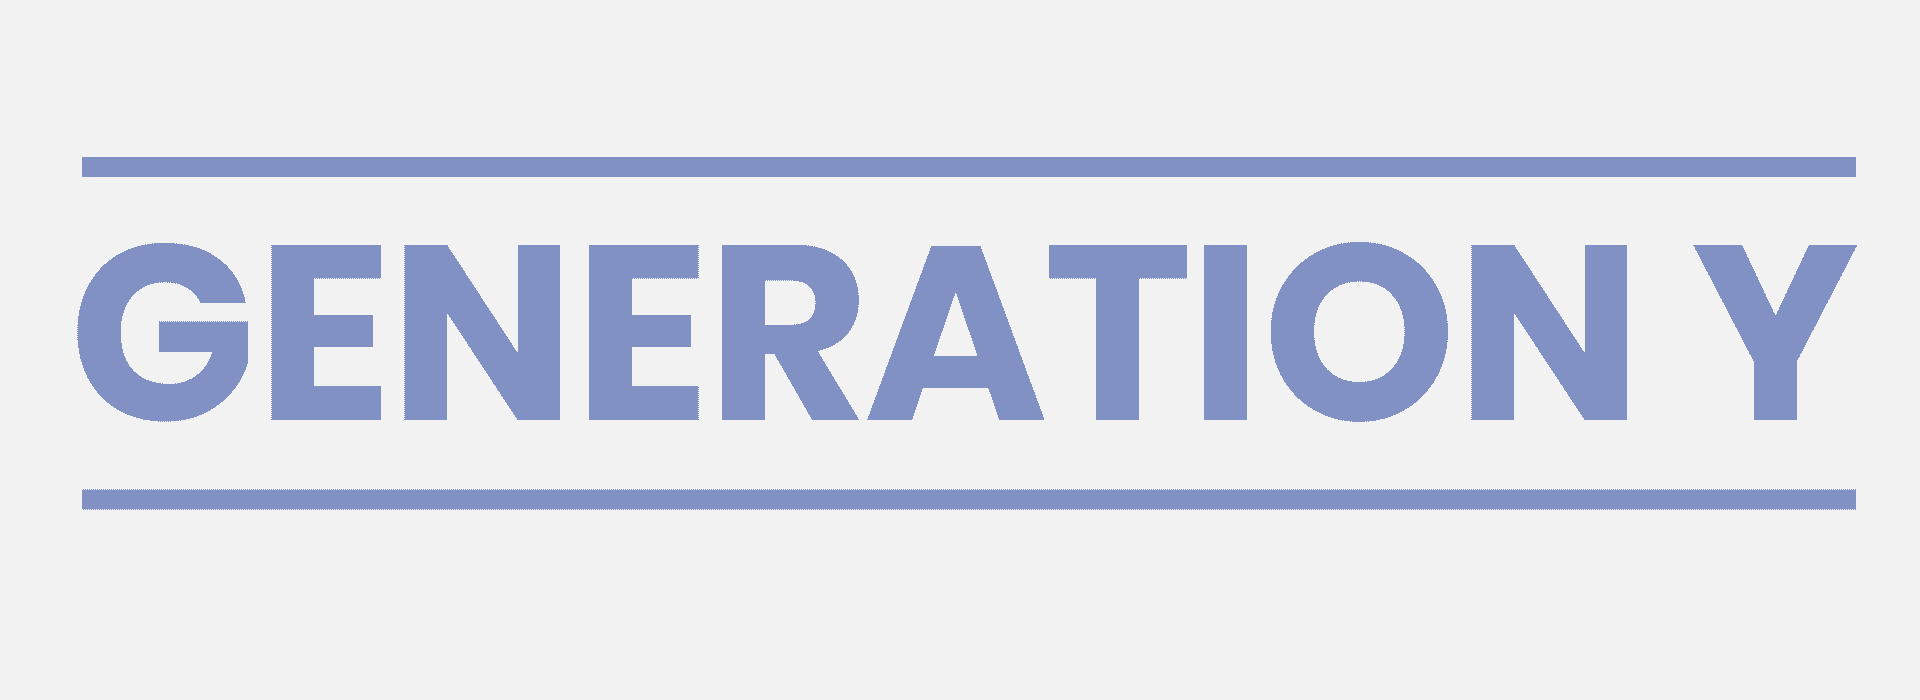 Schriftzug: Generation Y Merkmale